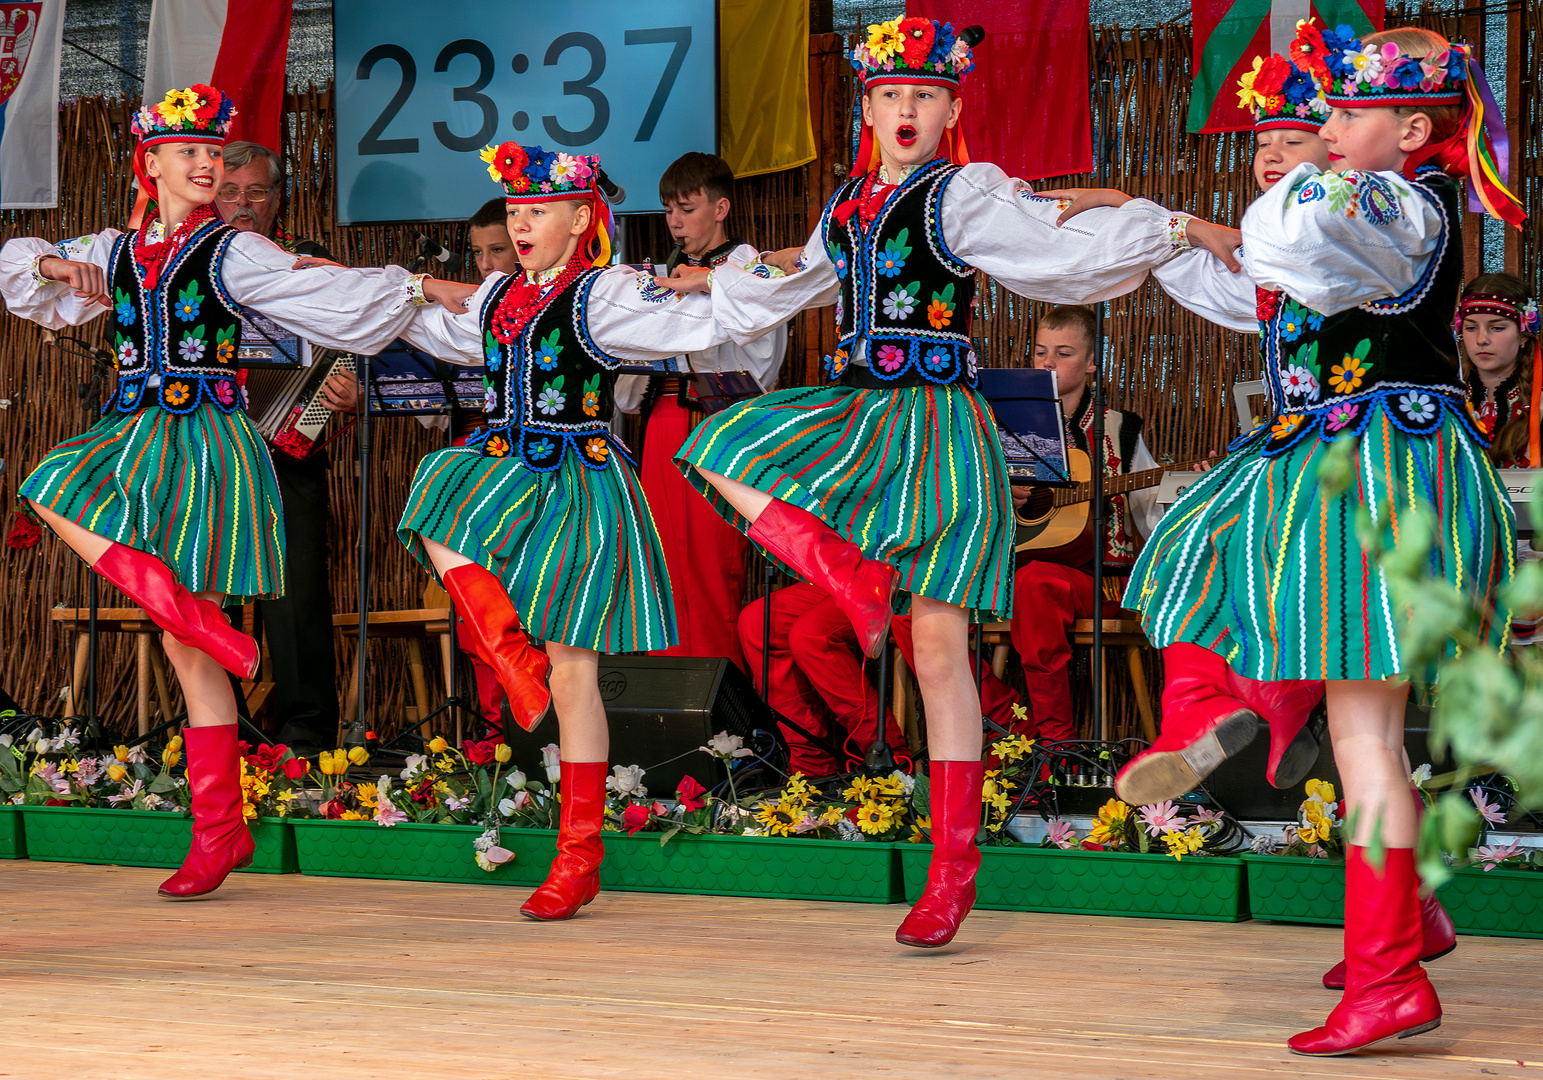 Grand Prix der Folklore in Ribnitz-Damgarten